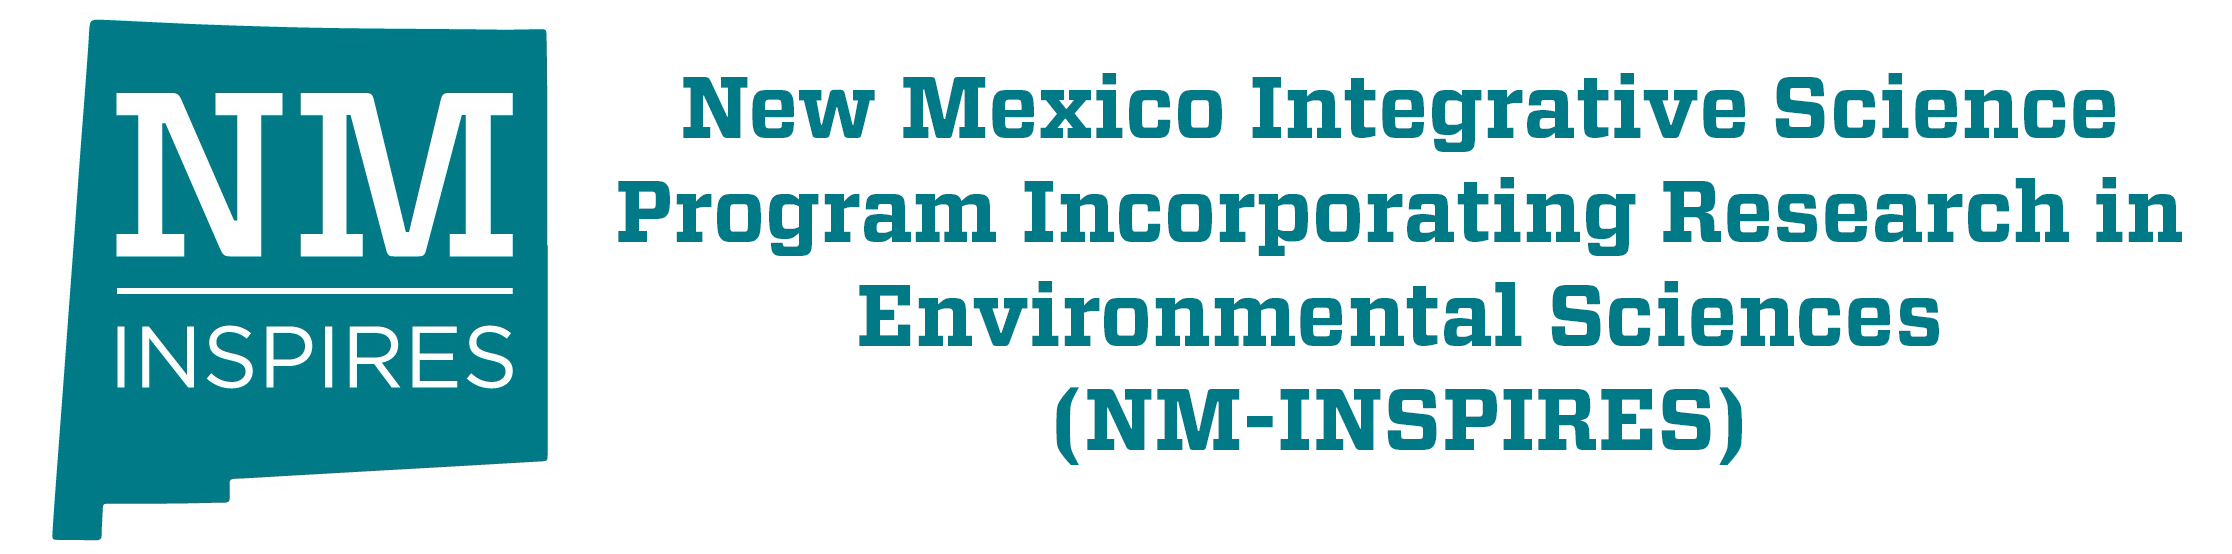 Programa de Ciência Integrativa do Novo México Incorporando Pesquisa em Ciências Ambientais (NM-INSPIRES)